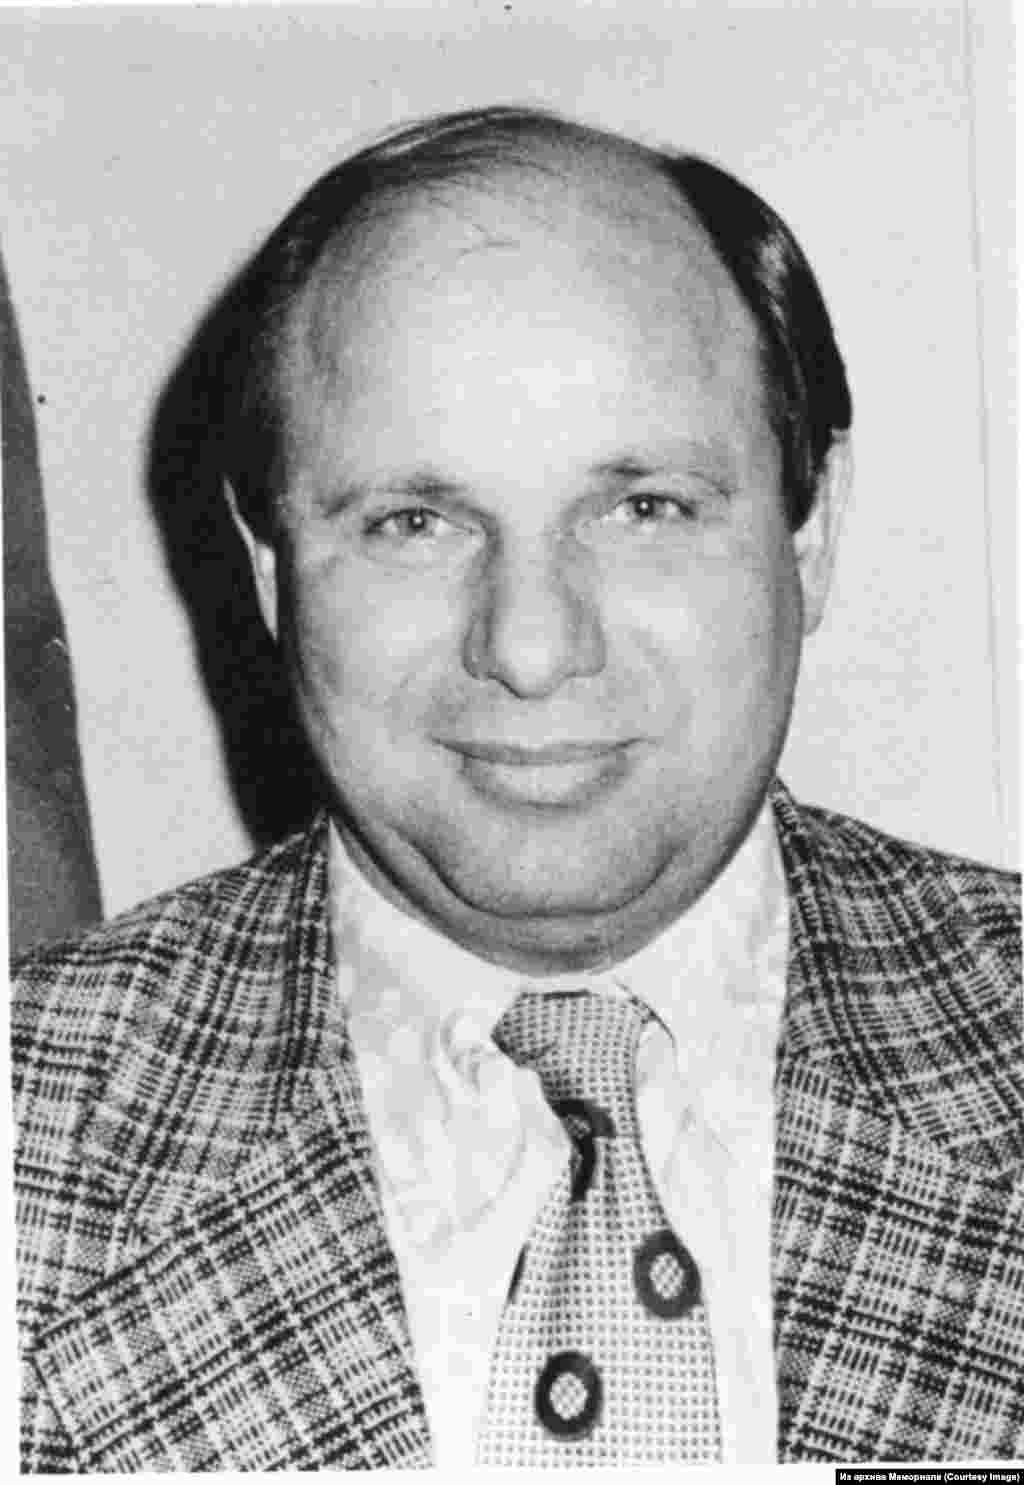 Алексей Никитин (1937-1984) - шахтер, защищал права рабочих в Донбассе, политзаключенный, отсидел подряд три срока: с 1972 по 1976, с 1977 по 1980 и с 1980 по 1984.